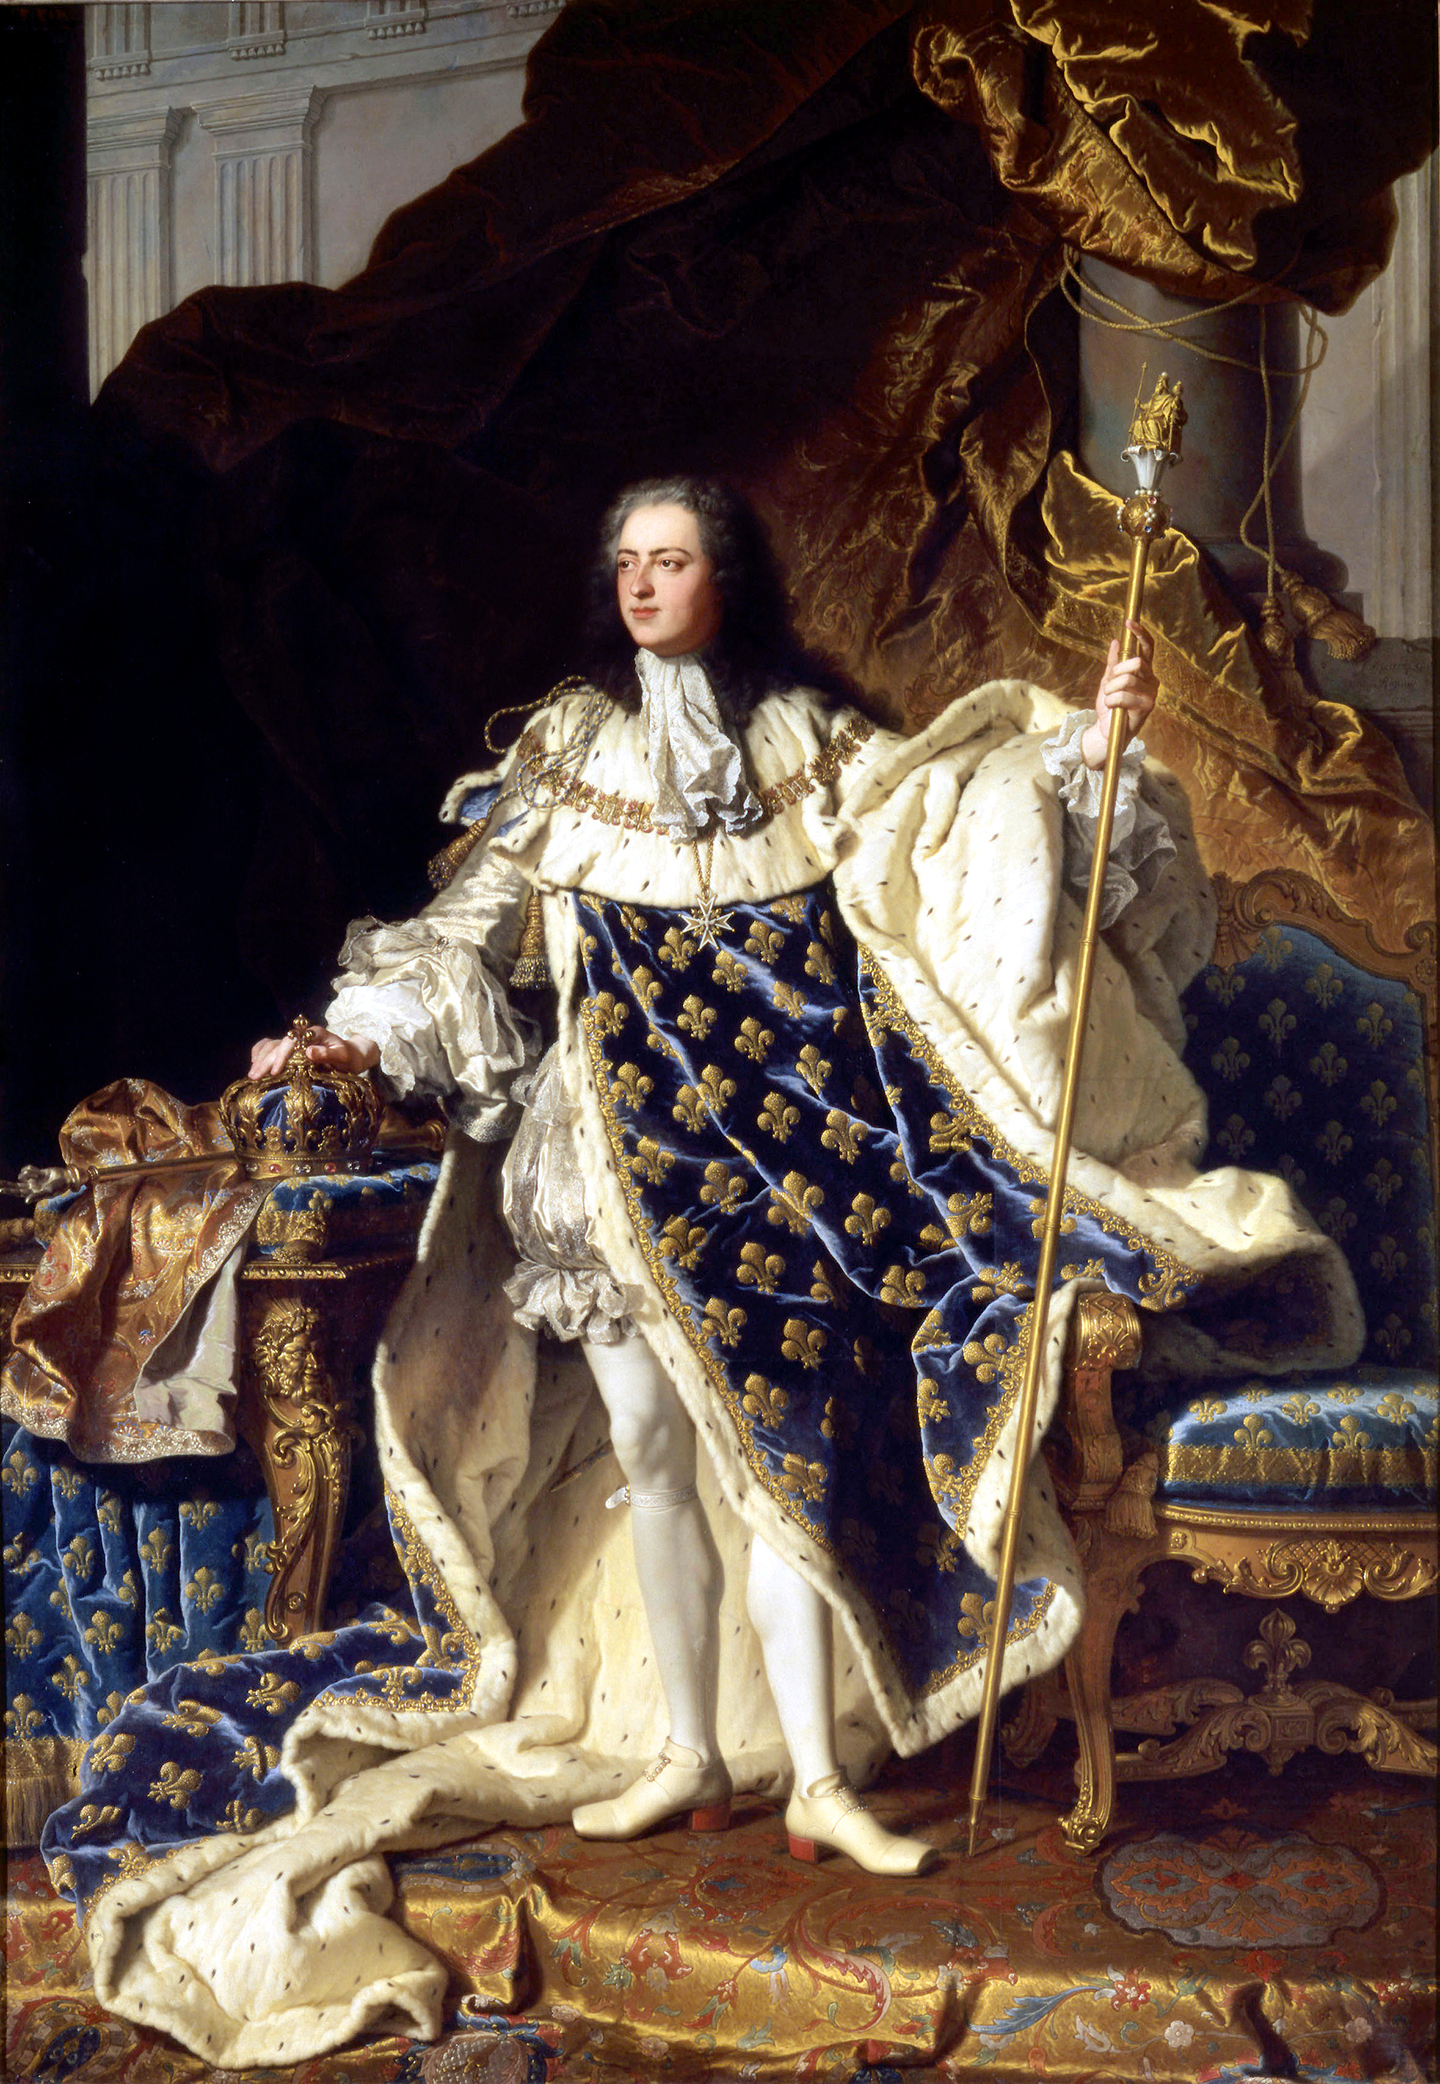 Tác phẩm “Louis XV in Coronation Robes” (Vua Louis XV trong lễ phục đăng quang), họa sỹ Hyacinthe Rigaud, năm 1730. Tranh sơn dầu trên vải canvas. Cung điện Versailles, Pháp quốc. (Ảnh: Tư liệu công cộng)